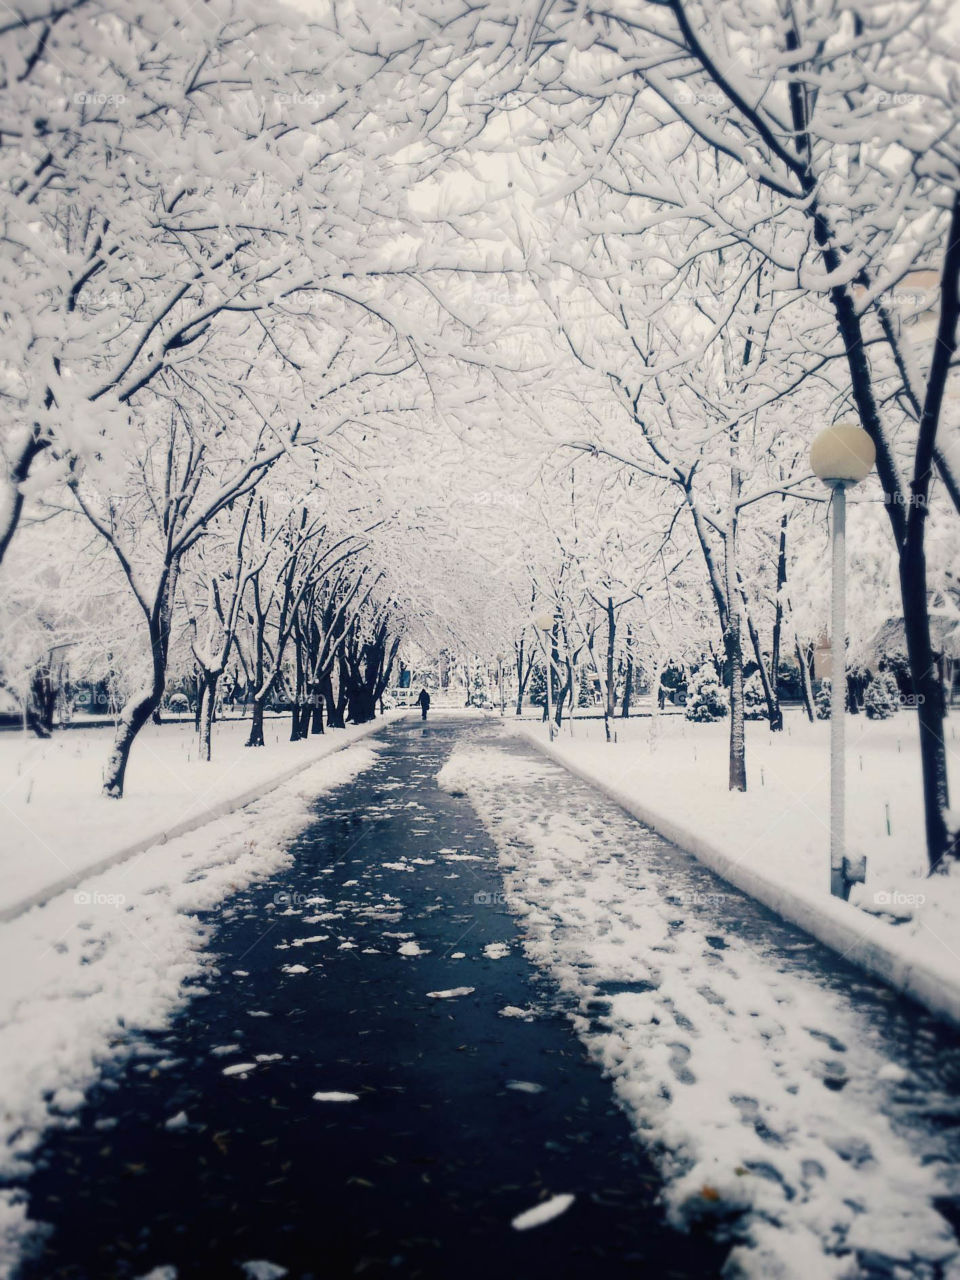 Taskent winter